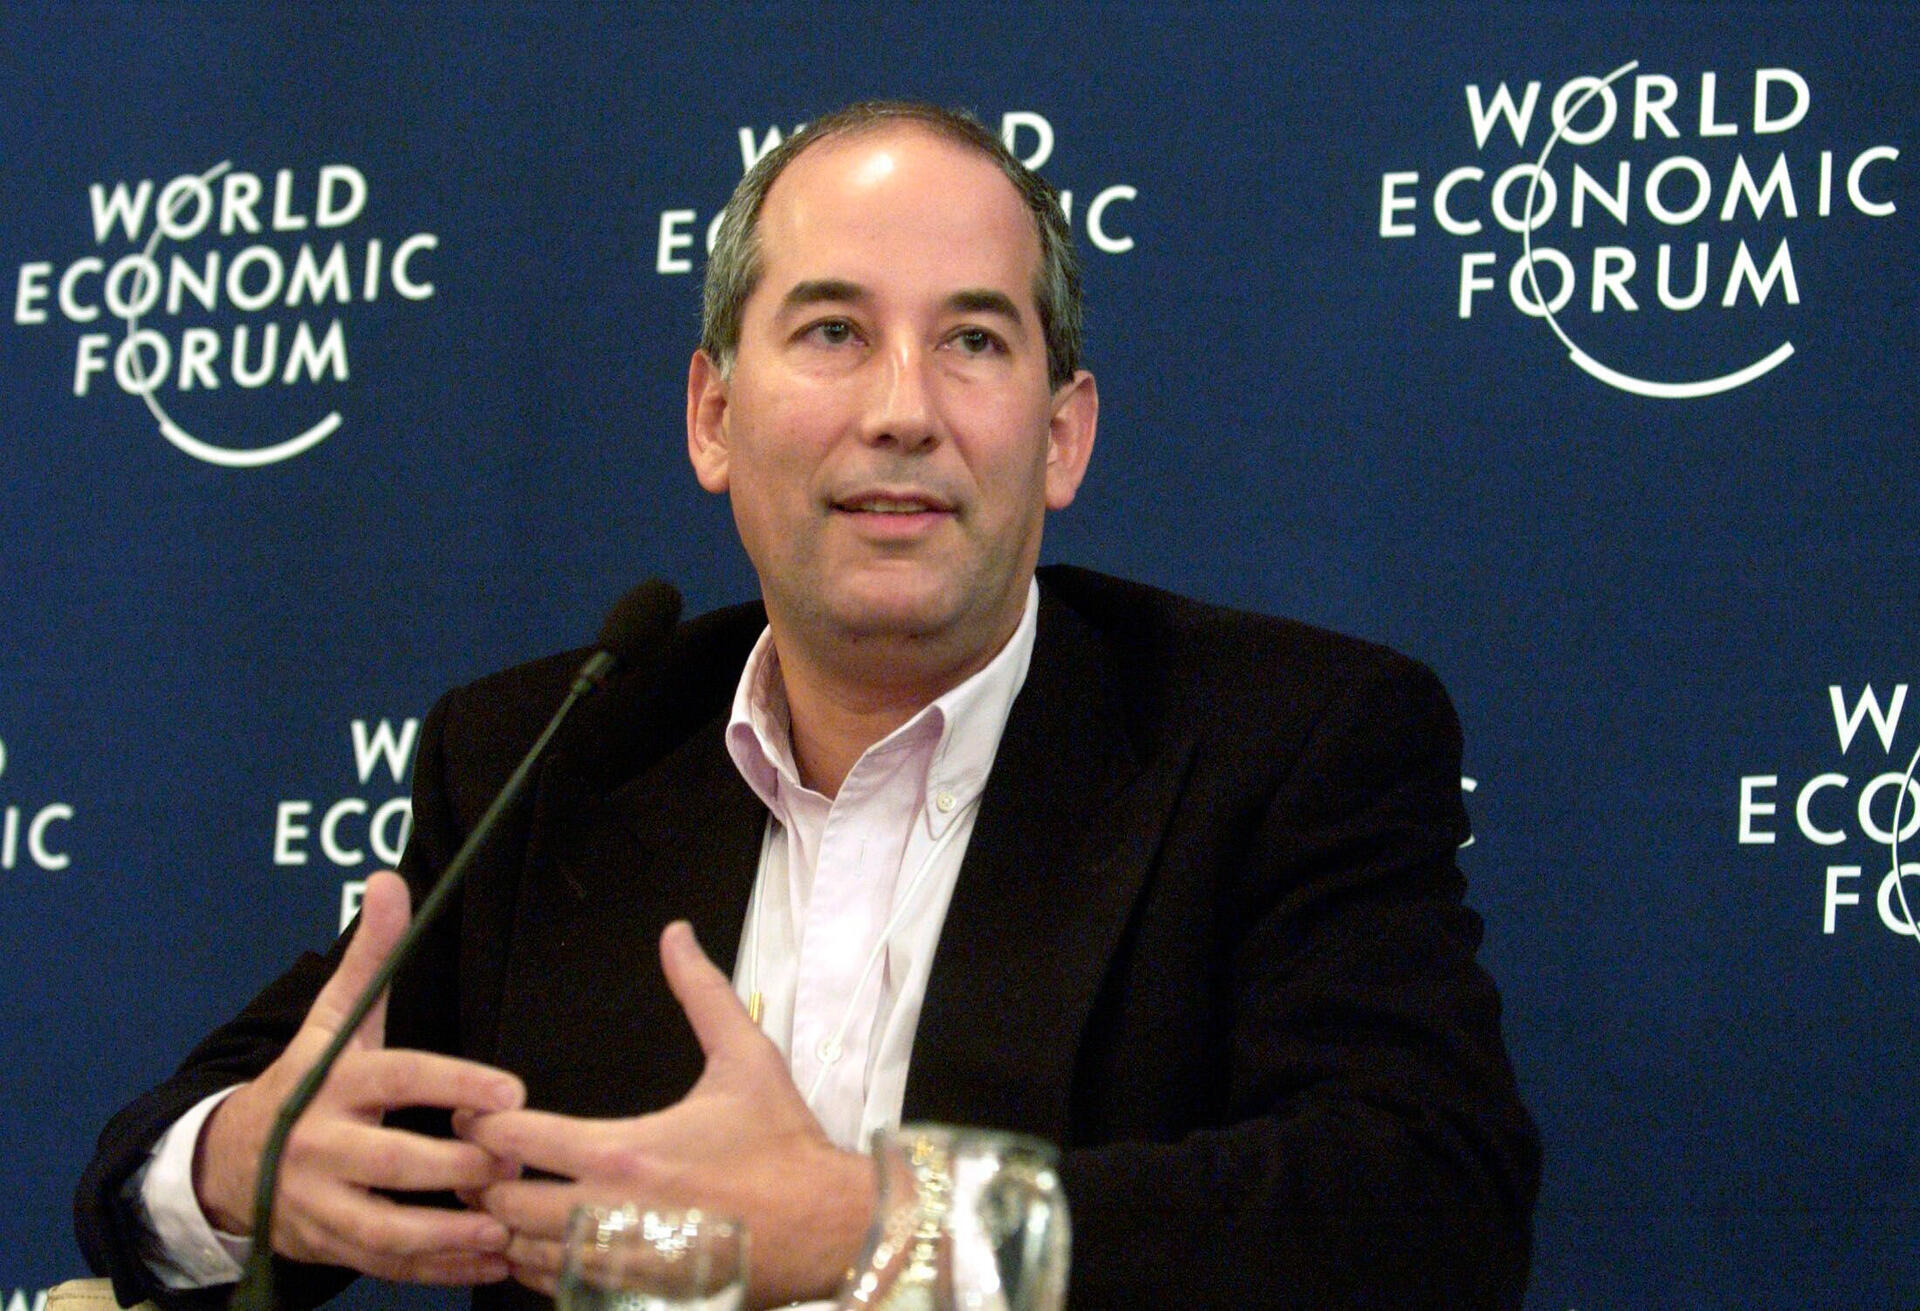 טום גלוסר לשעבר מנכ"ל רויטרס משתתף בדיון במהלך הפורום הכלכלי העולמי בדאבוס